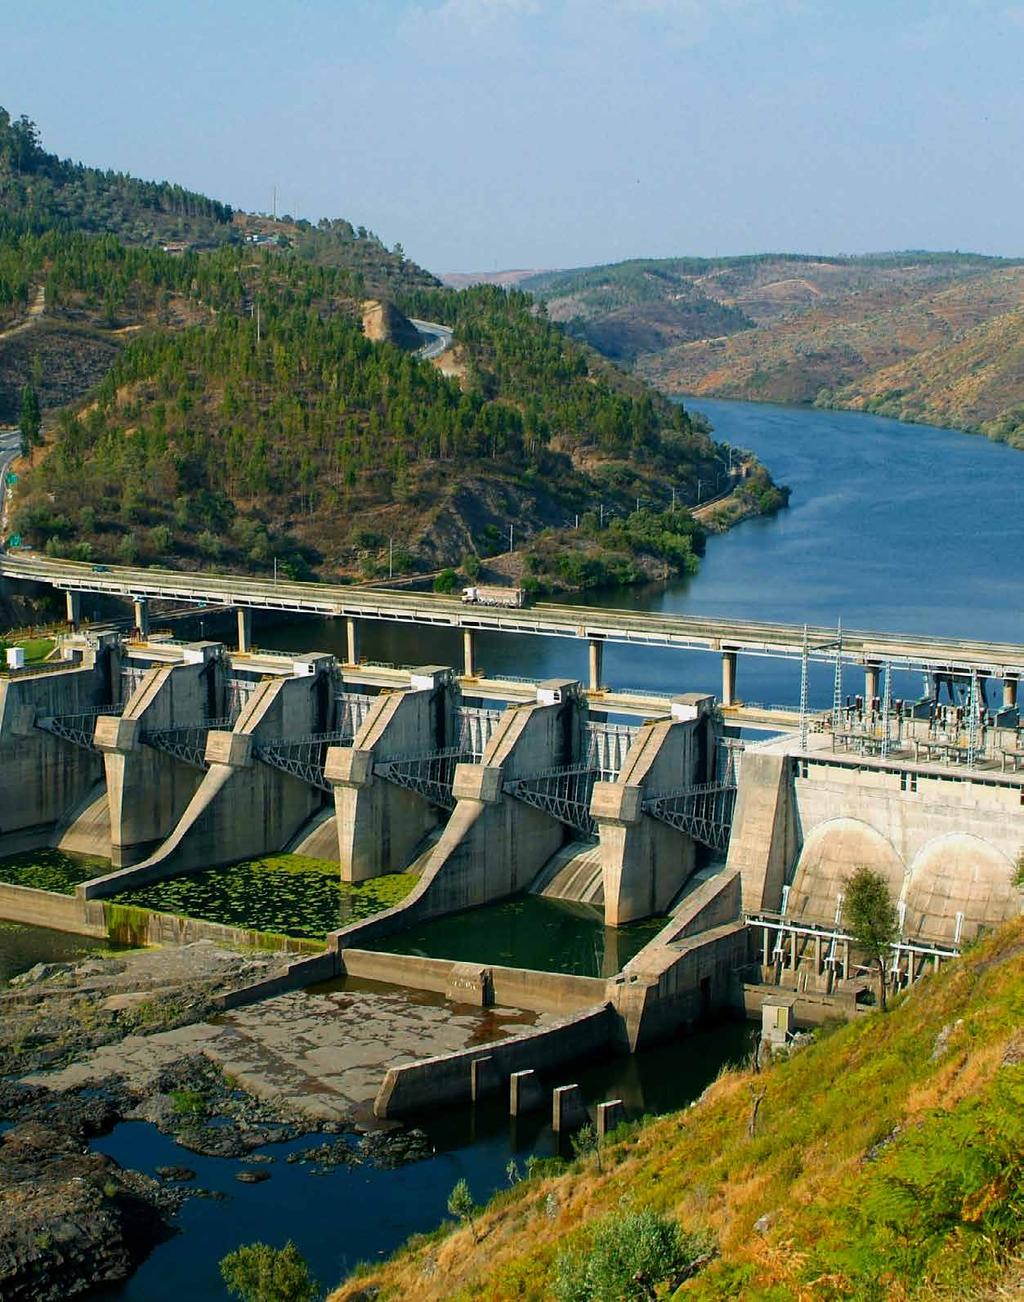 9 Ocorrências Ambientais e Situações de Emergência Todos os aproveitamentos hidroelétricos possuem um PSI - Plano de Segurança Interno, cujo objetivo é organizar, de forma sistemática, o acionamento